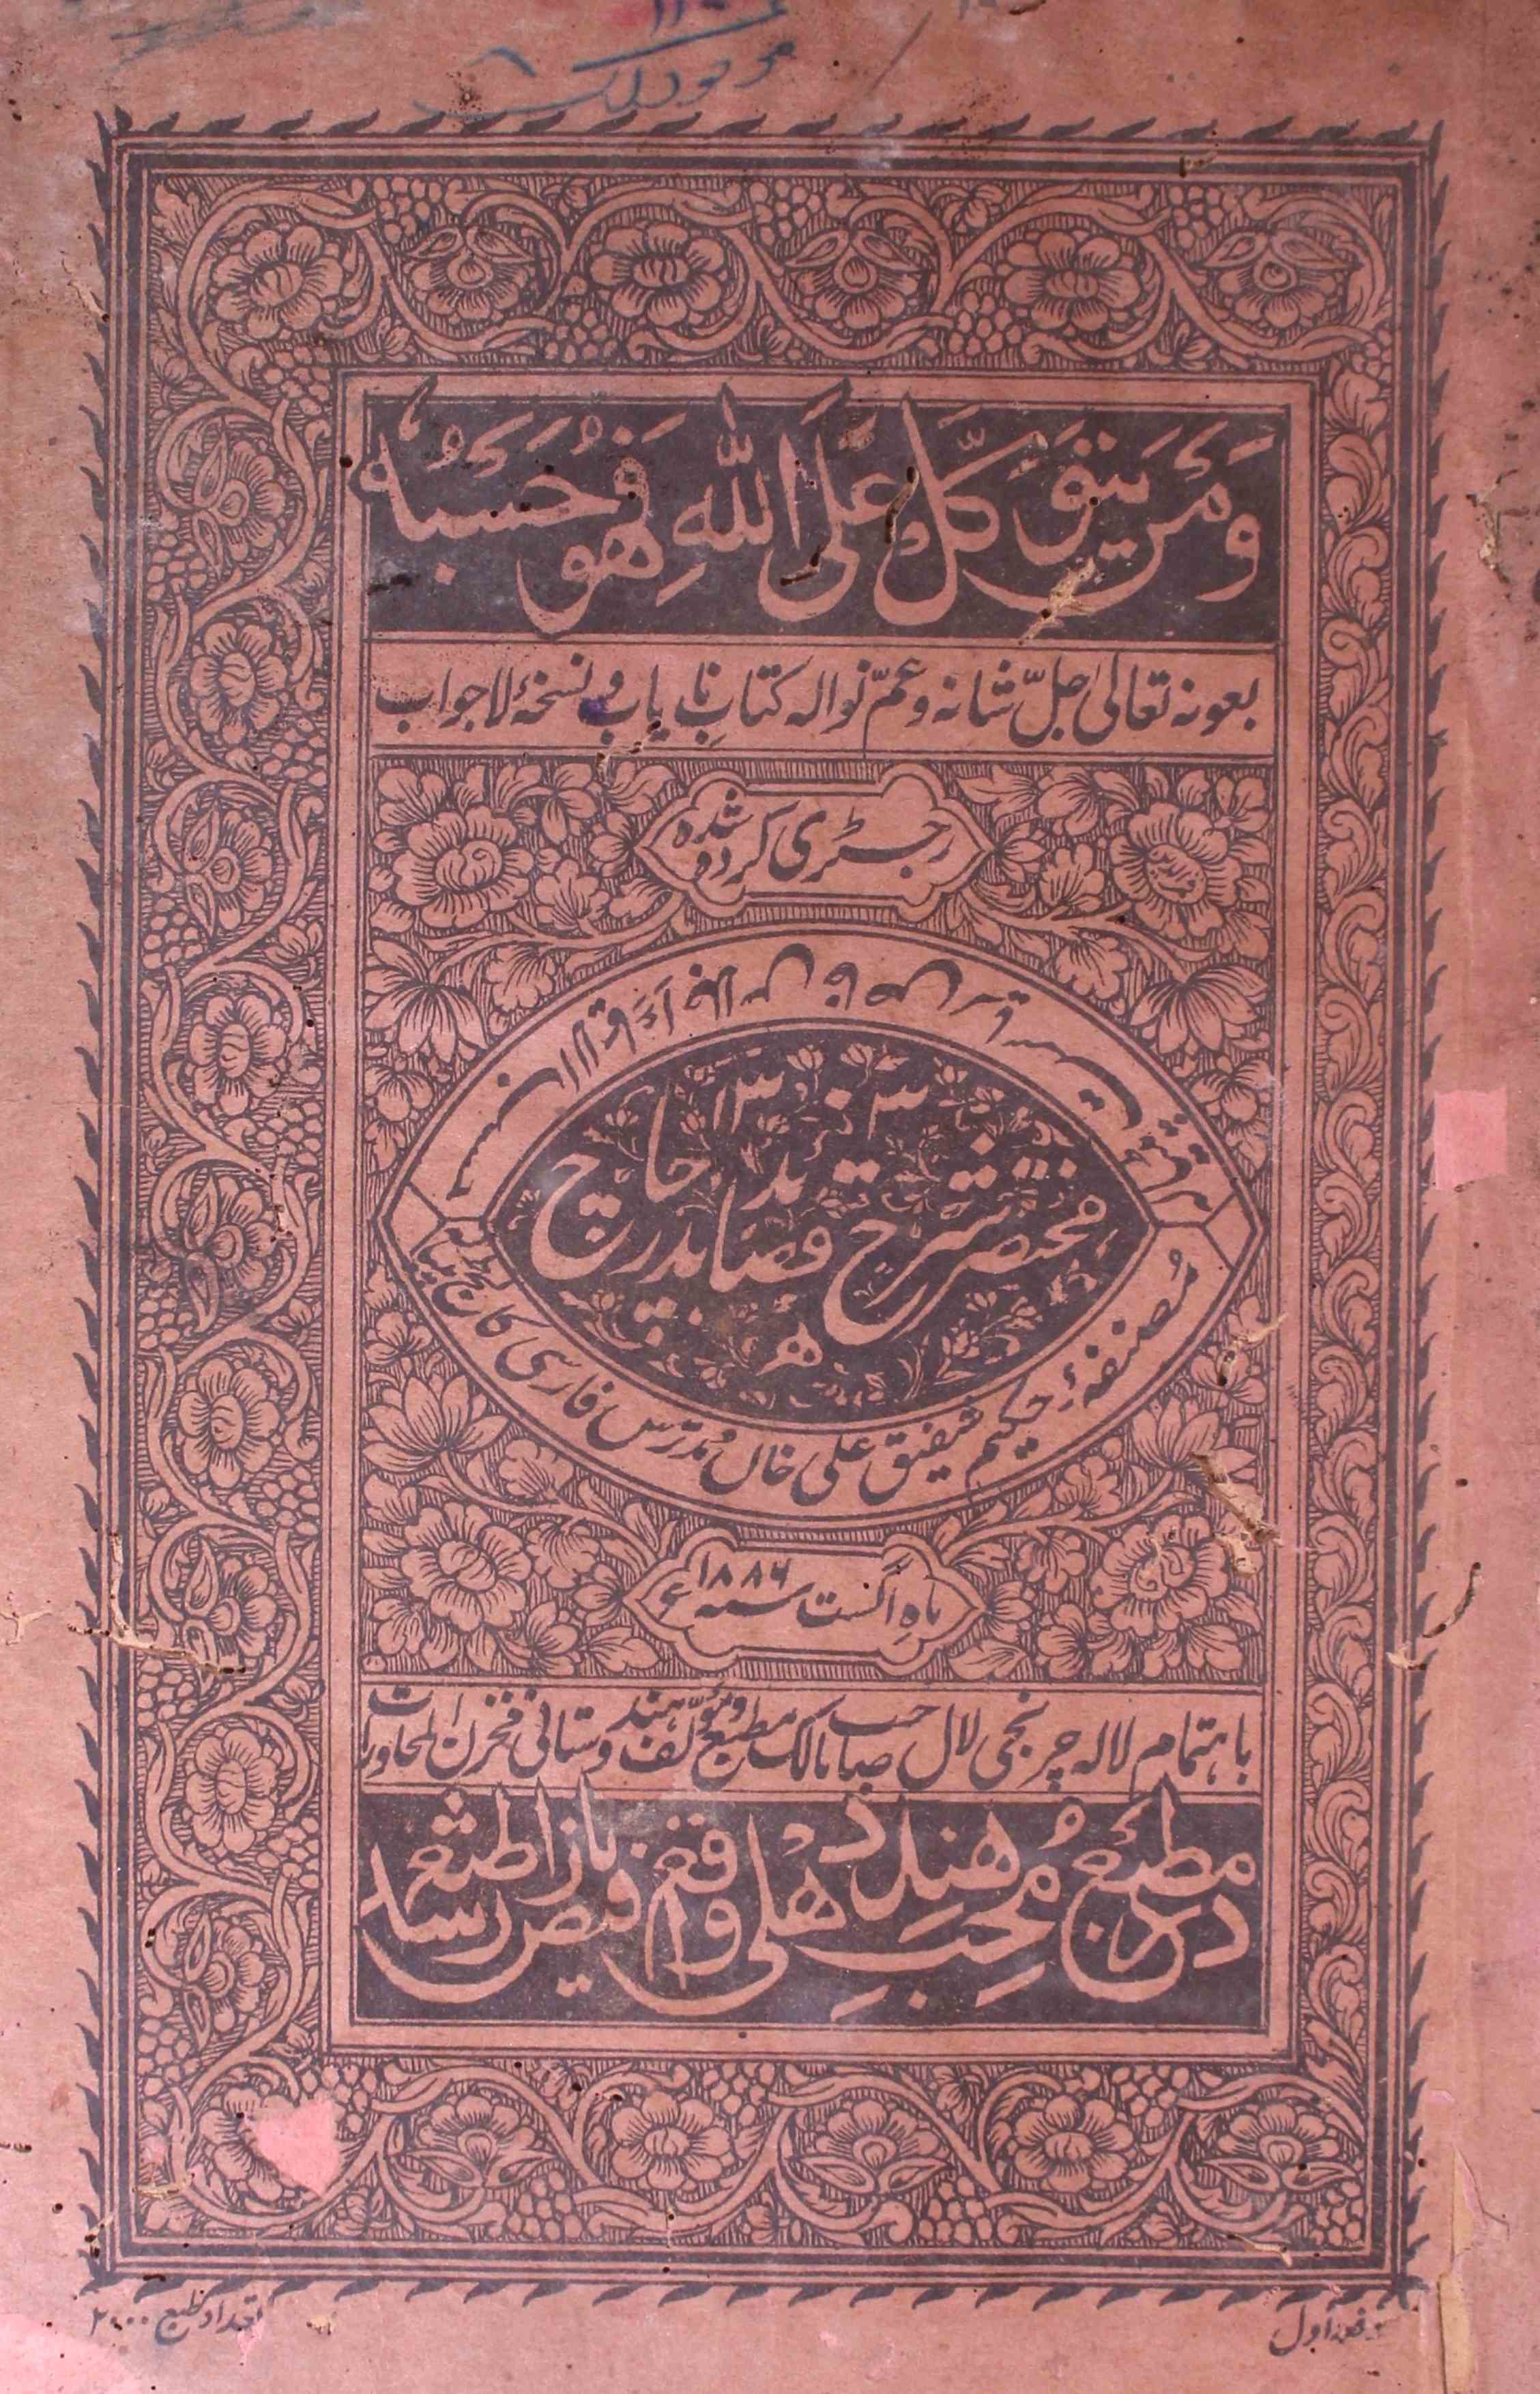 Mukhtasar Sharah-e-Qasaid Badr-e-Chaach